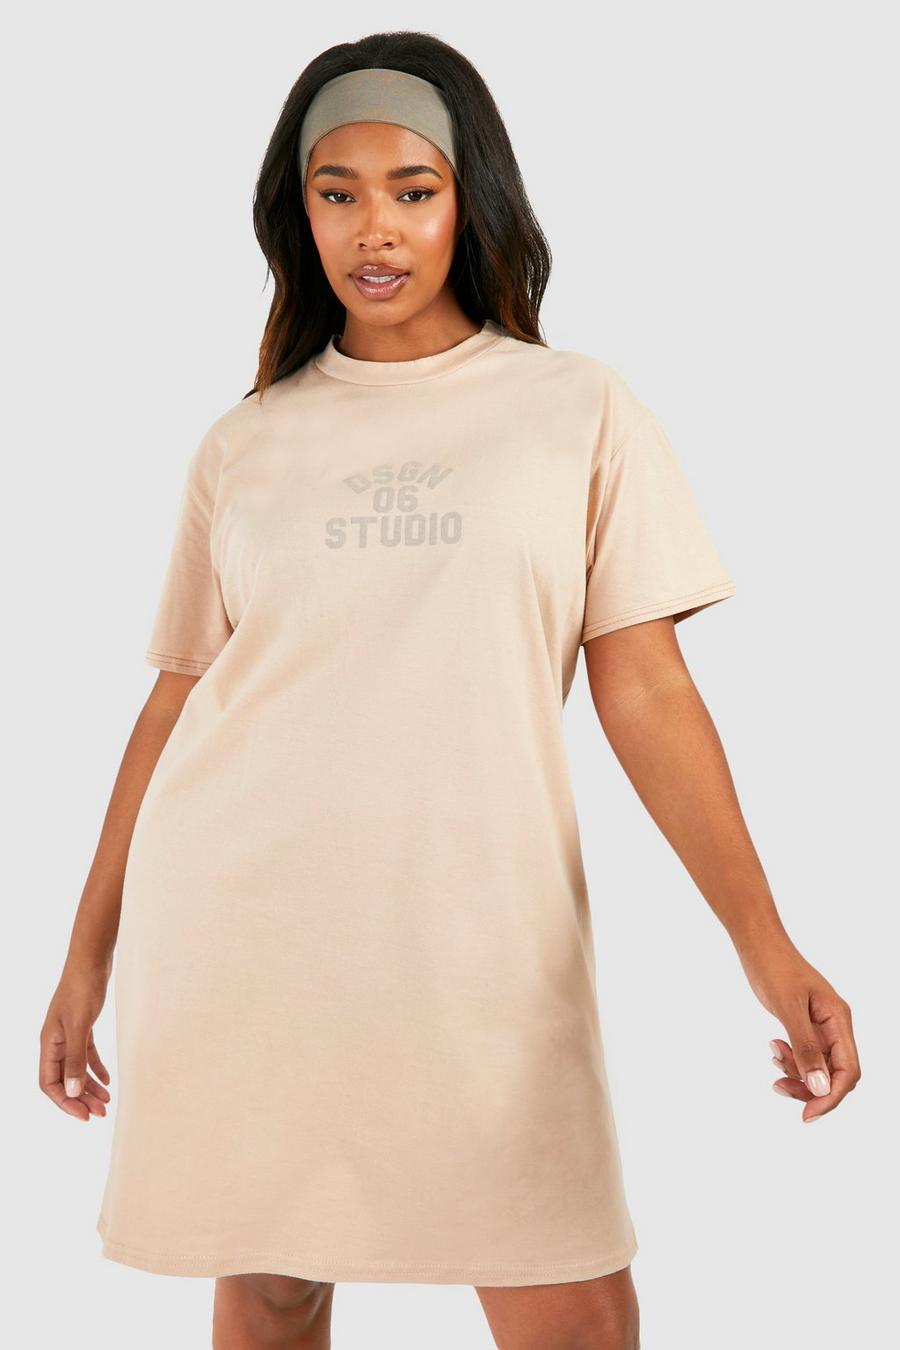 Vestito T-shirt Plus Size con stampa Dsgn Studio, Stone